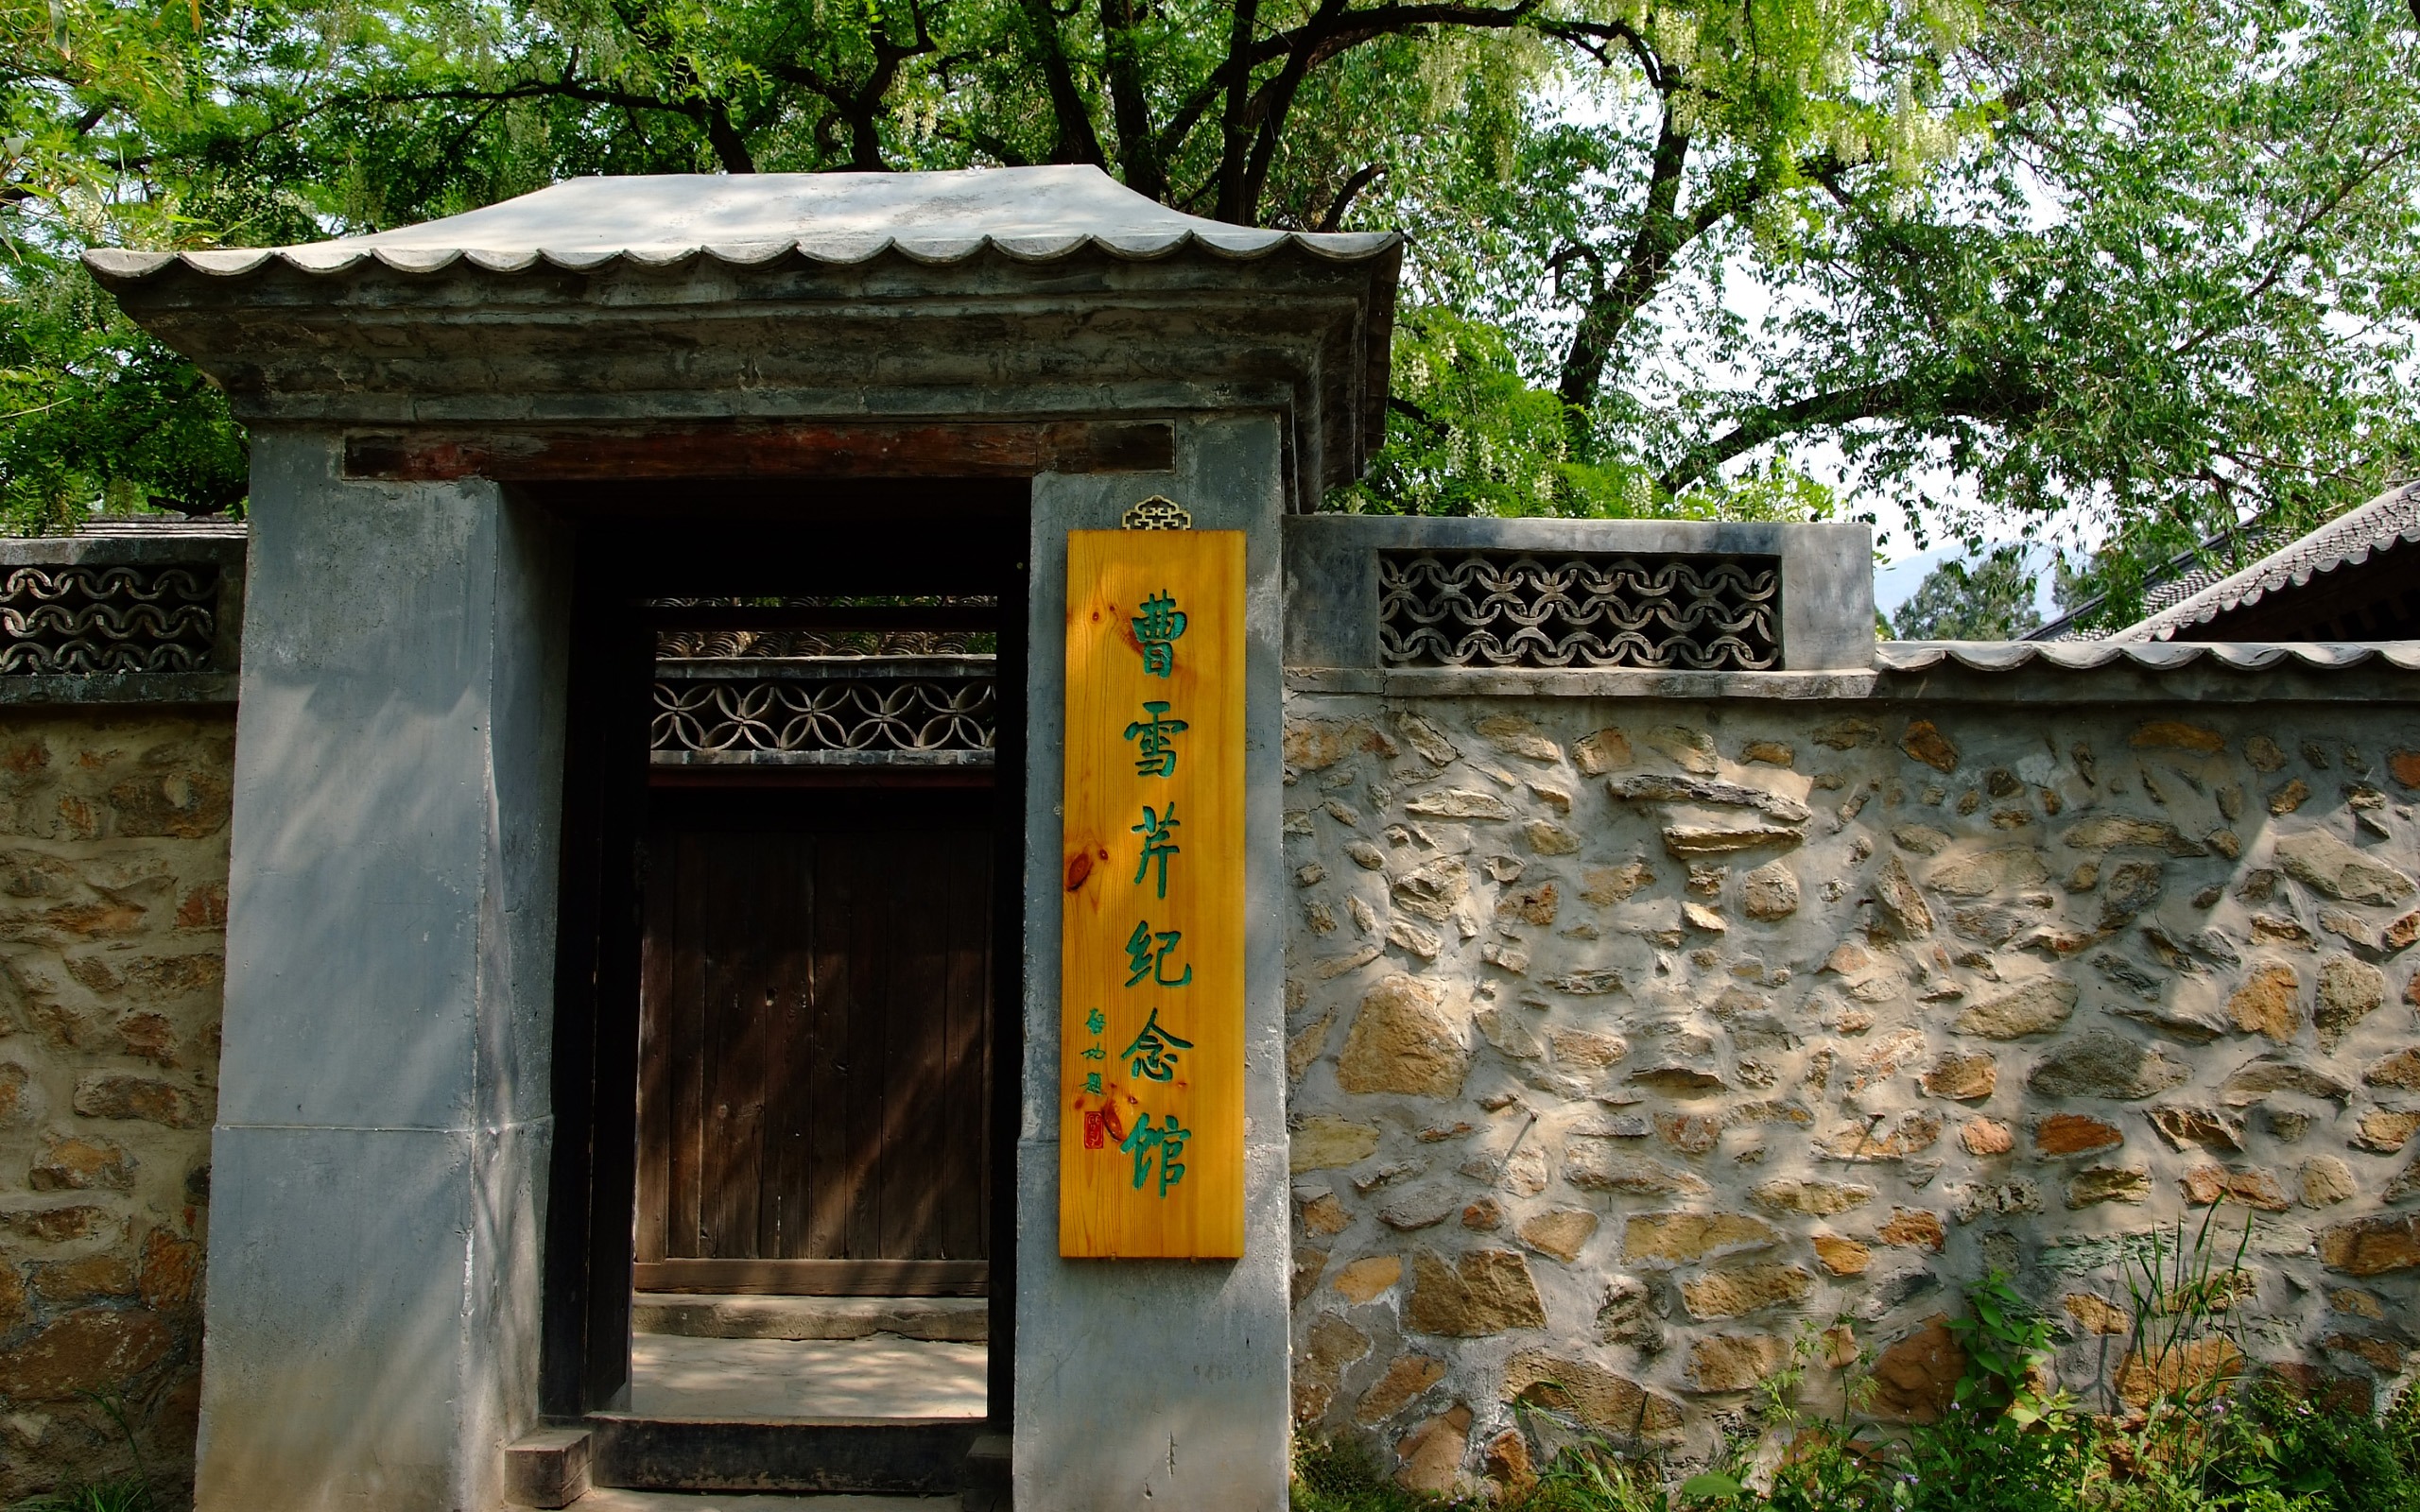 Xiangshan jardín principios del verano (obras barras de refuerzo) #17 - 2560x1600